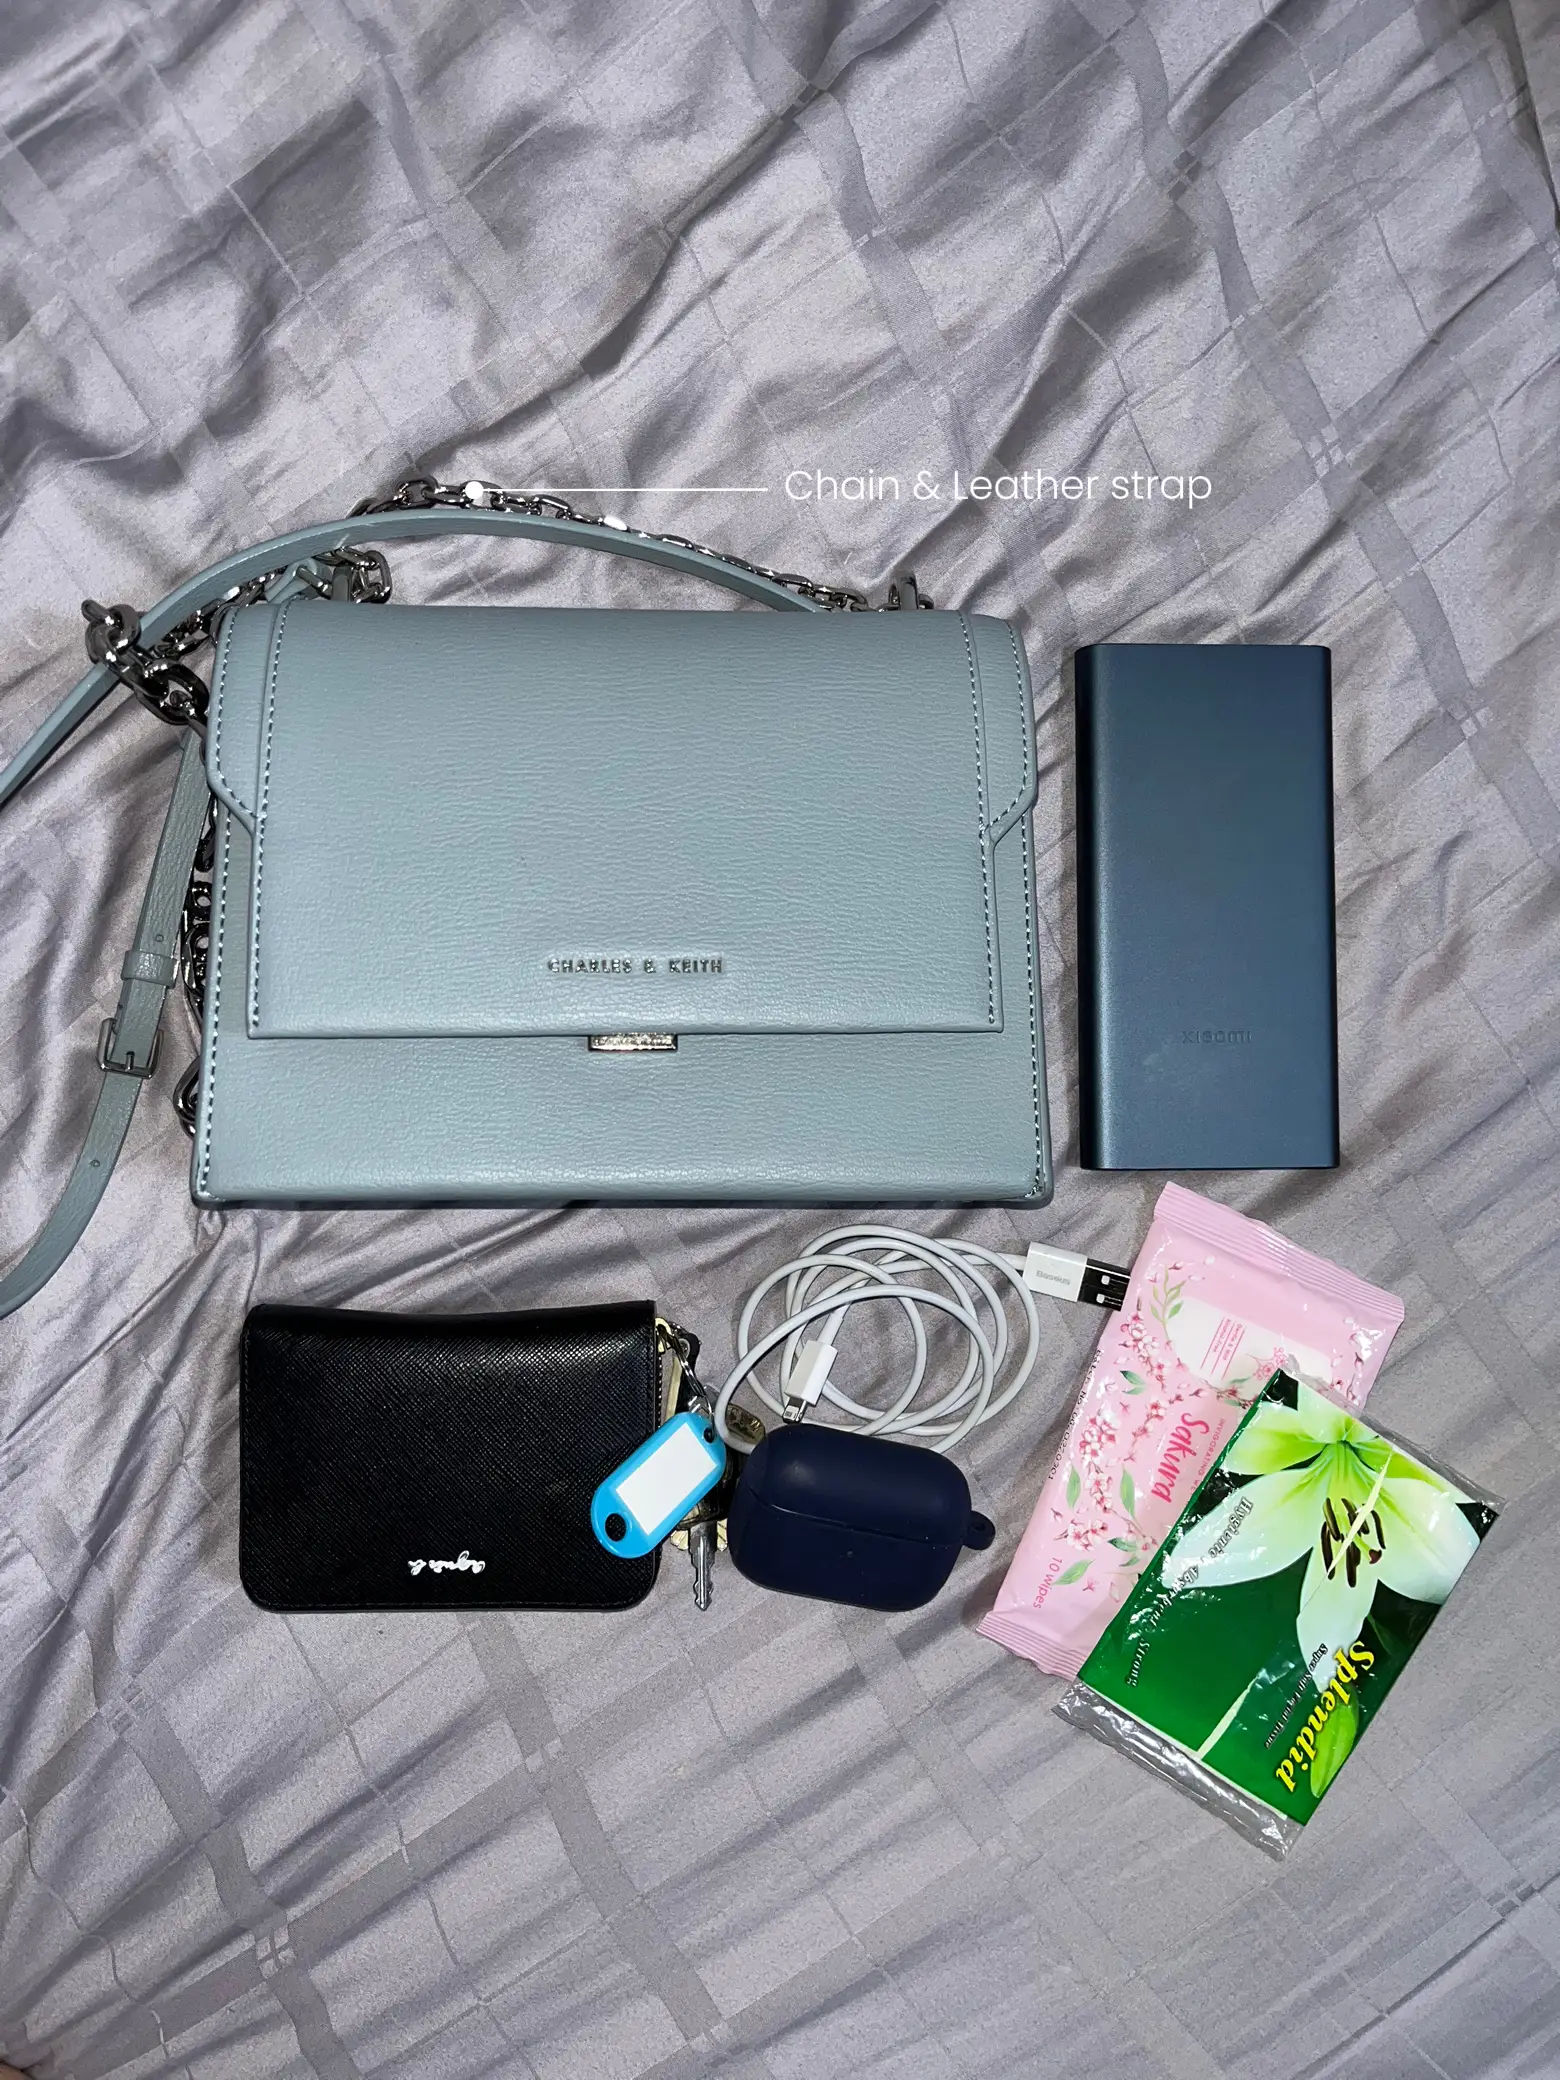 ✨Delaiah ✨ My first @CLNph bag 🥰 So simple yet so elegant